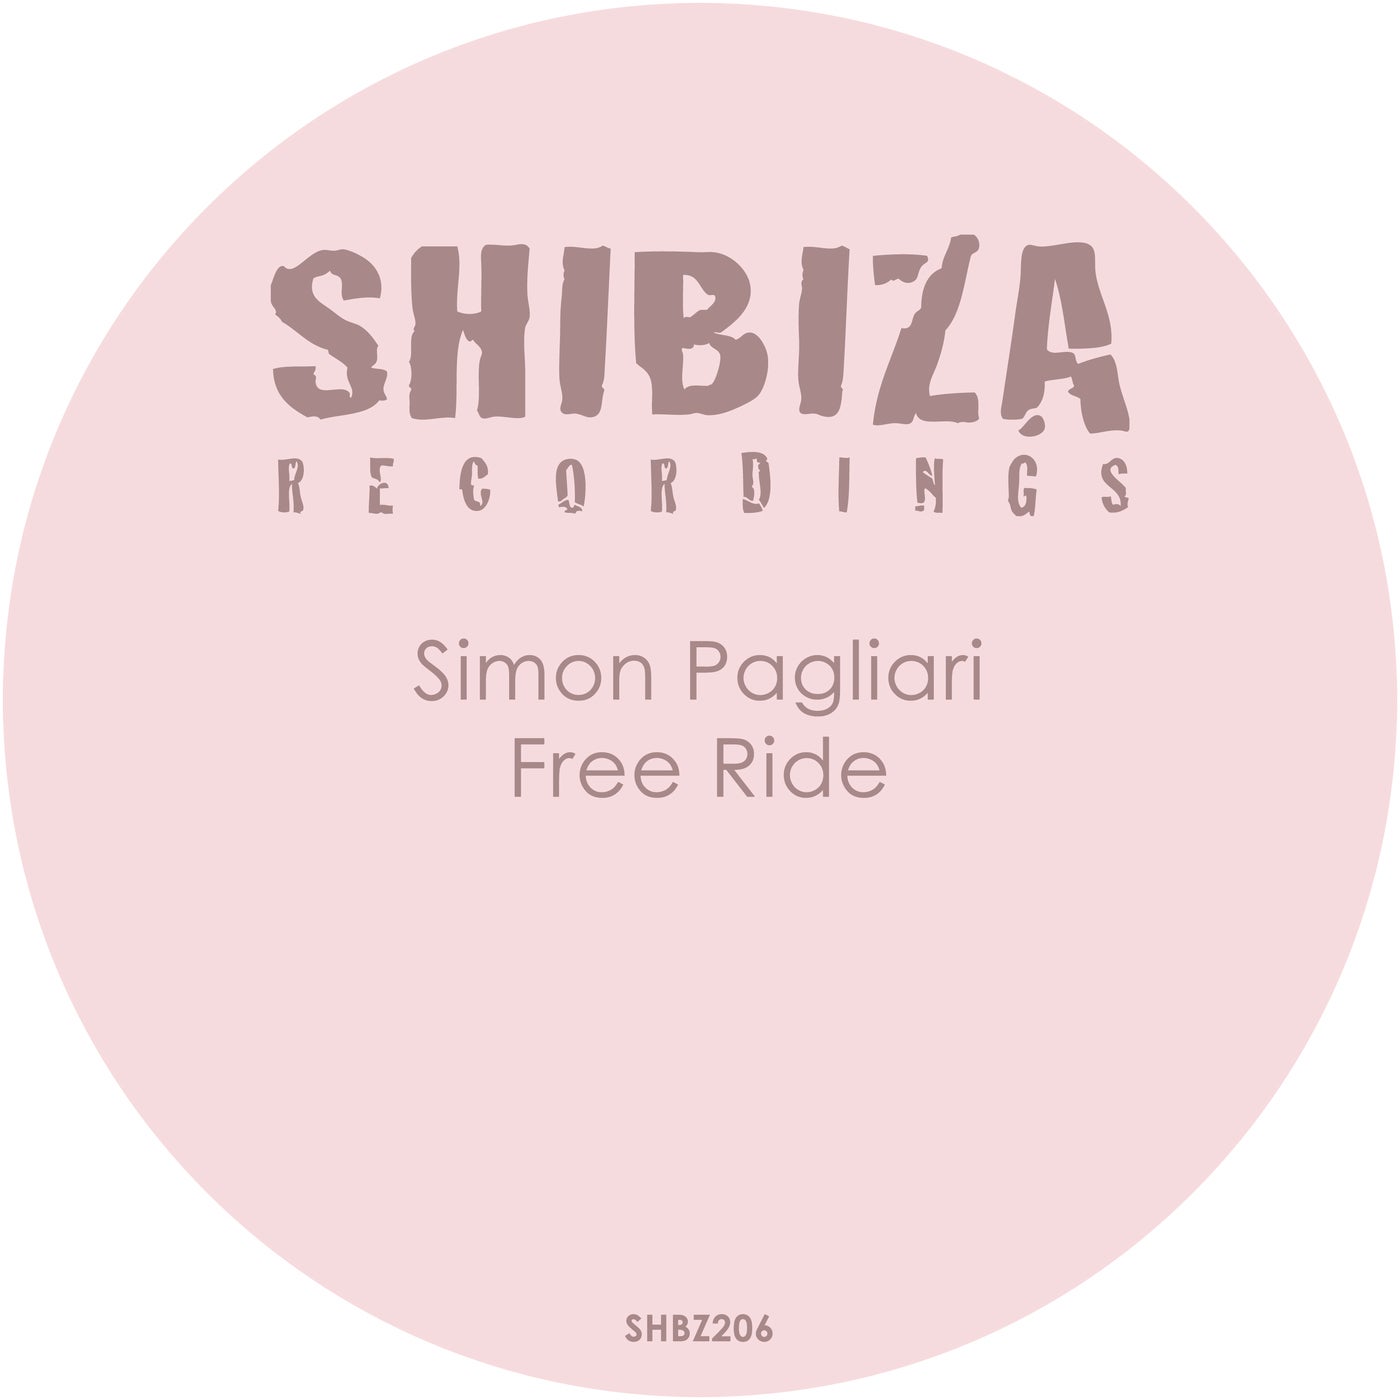 Simon Pagliari – Free Ride [SHBZ206]